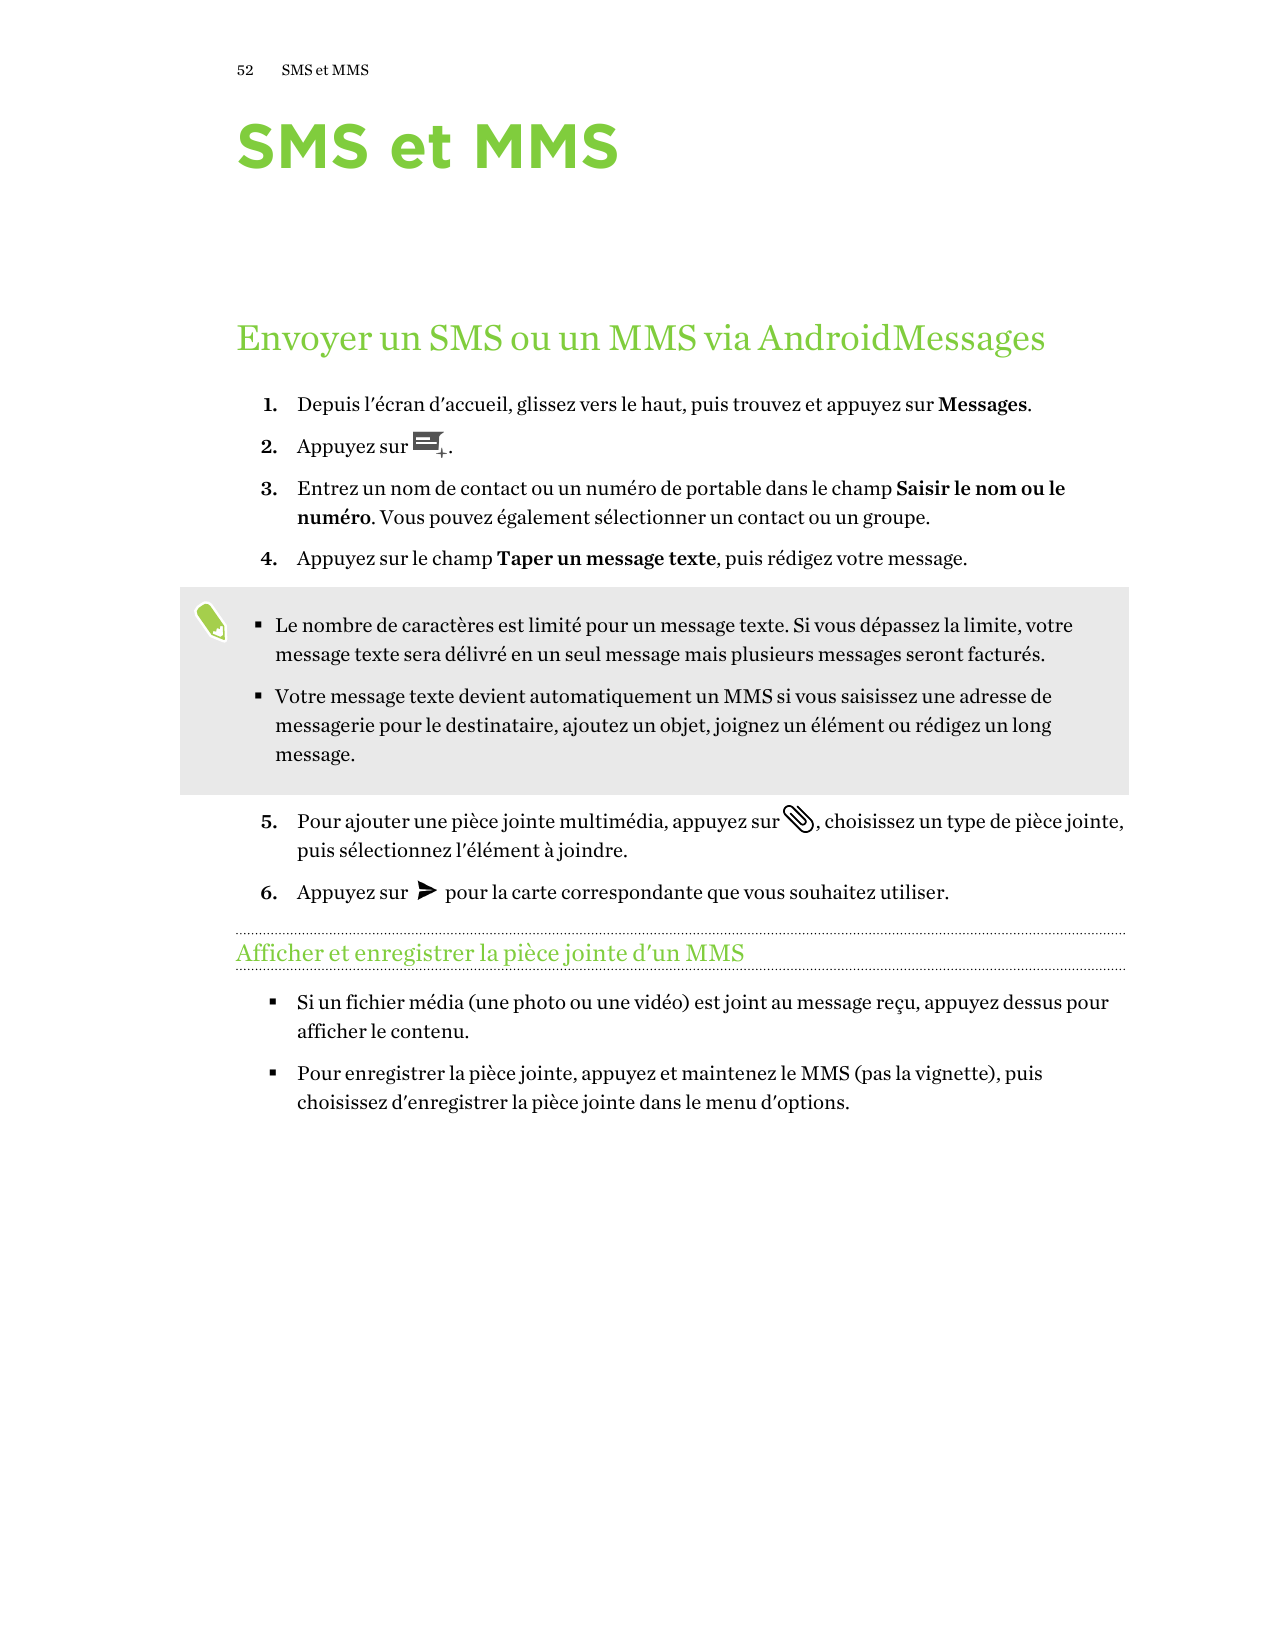 52SMS et MMSSMS et MMSEnvoyer un SMS ou un MMS via AndroidMessages1. Depuis l'écran d'accueil, glissez vers le haut, puis trouve